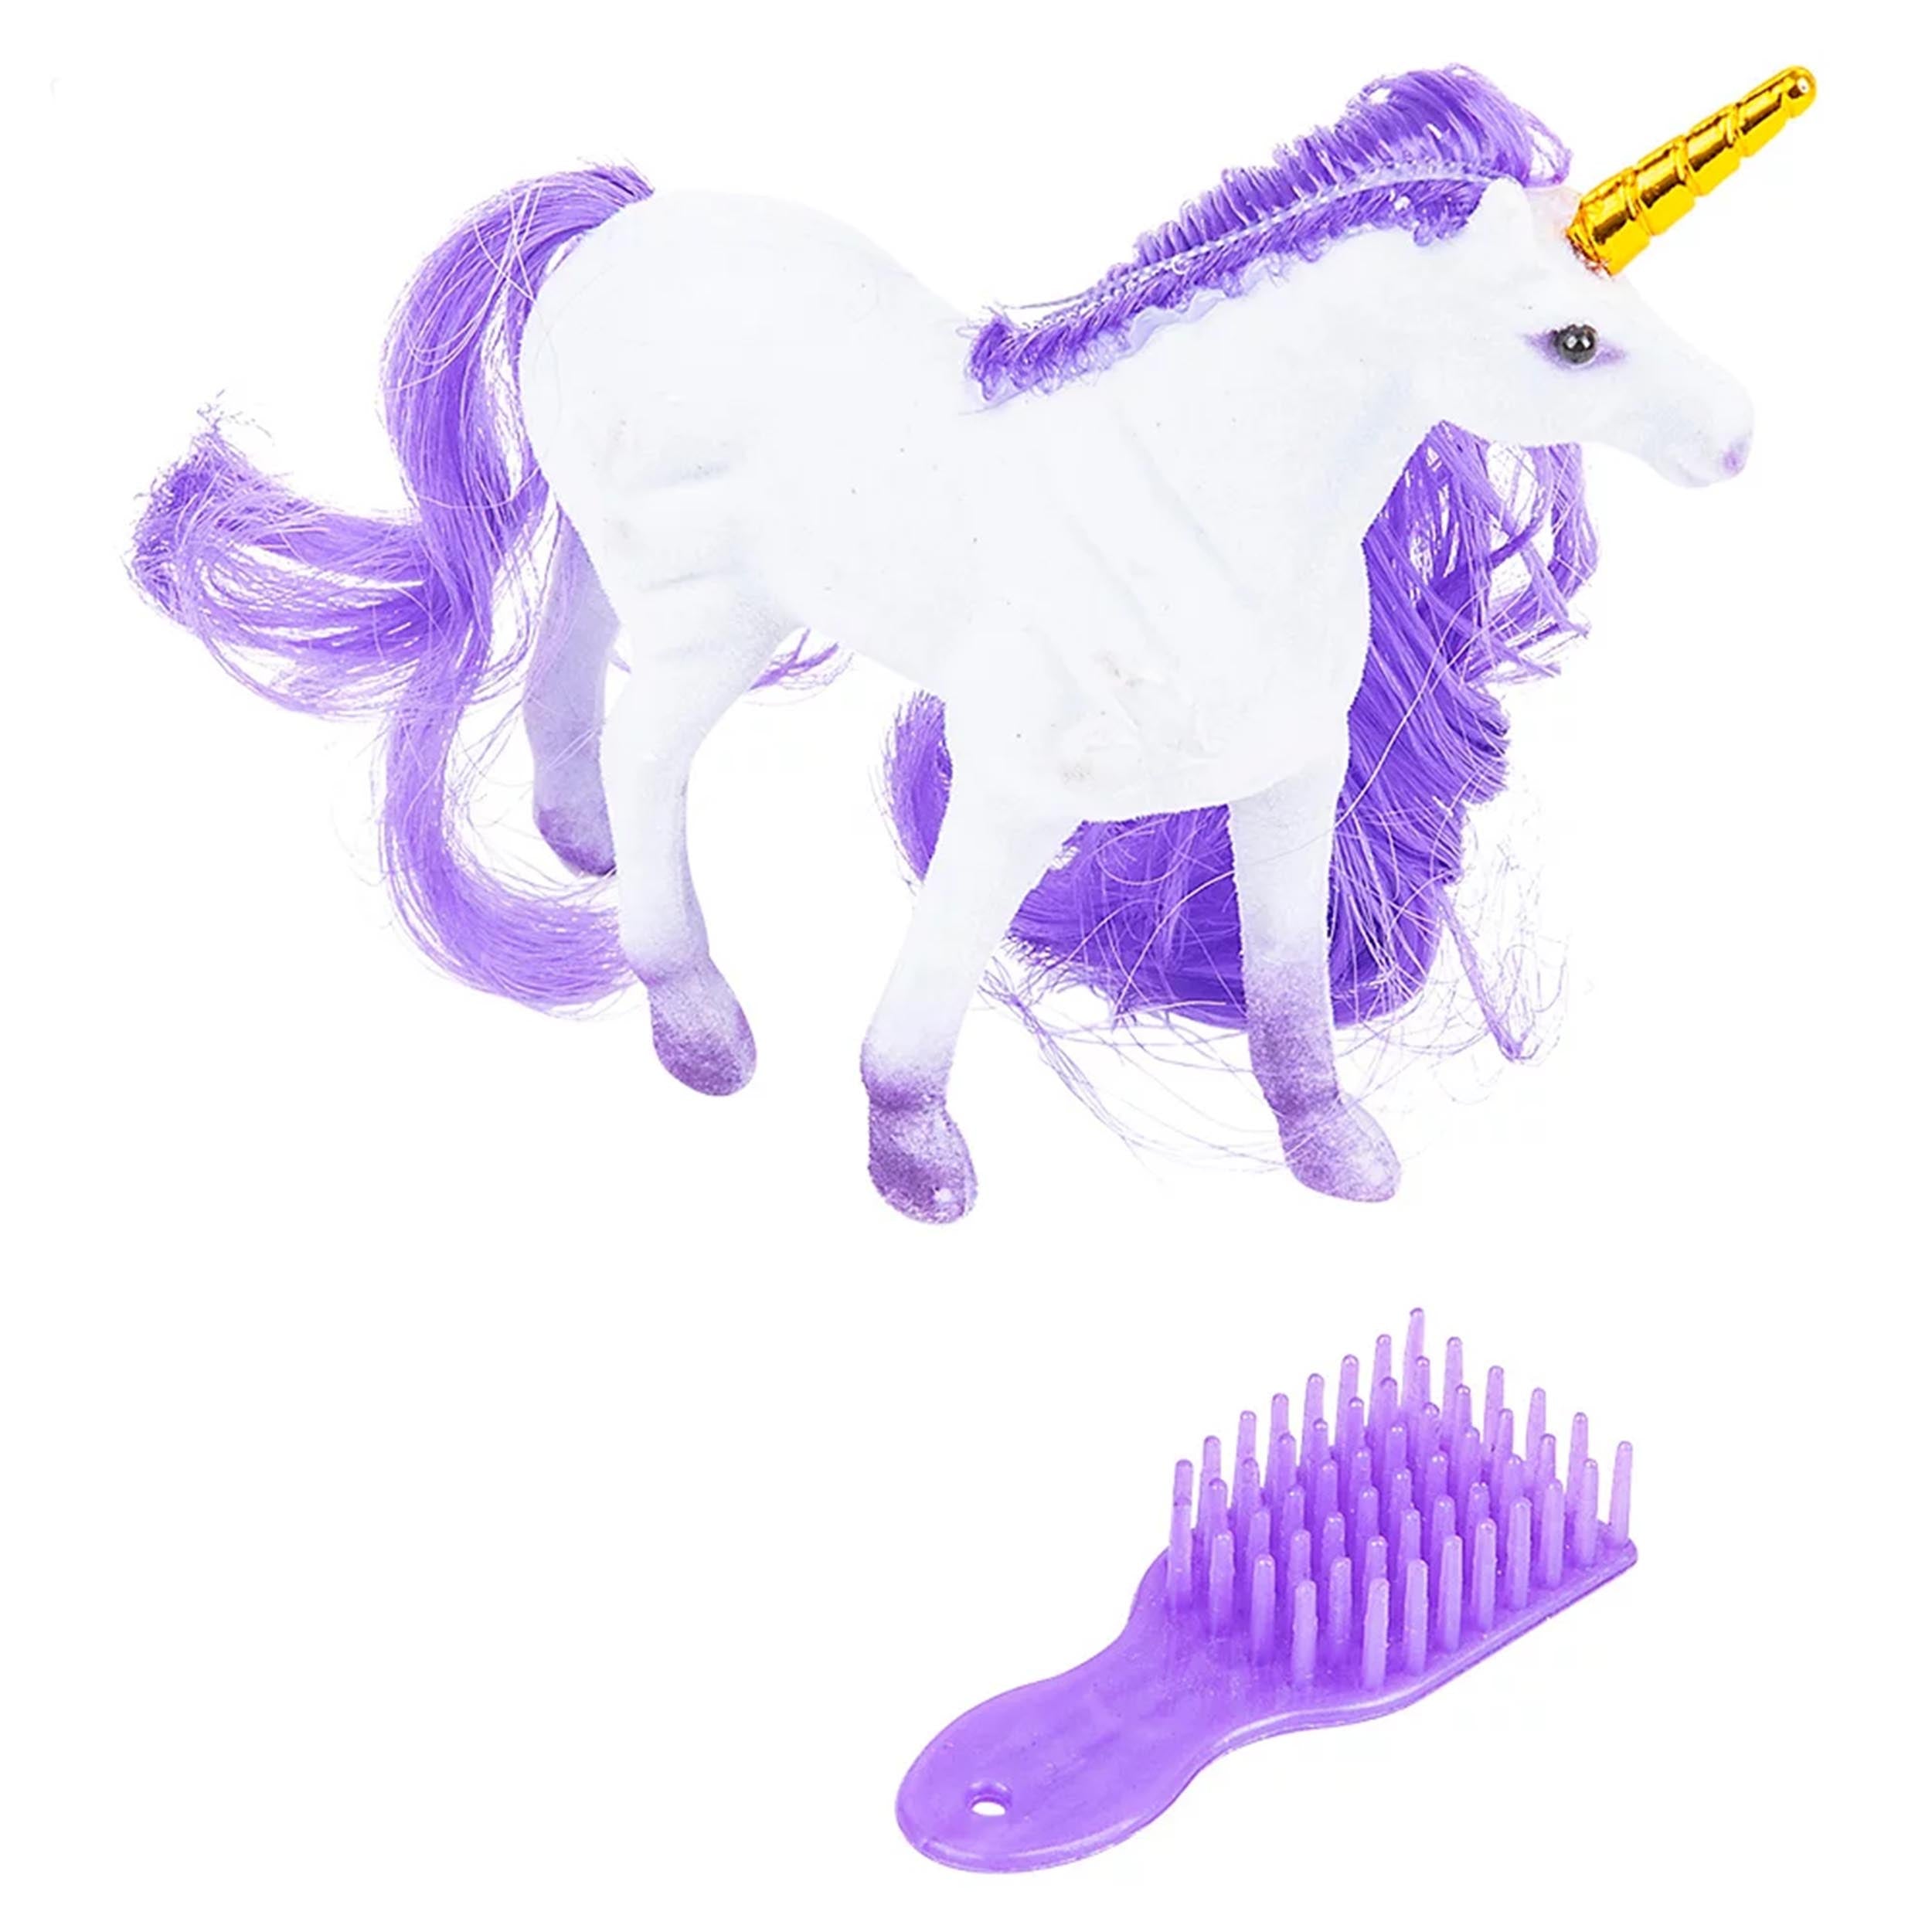 Flocked Unicorn Play Setkids toys (1 Dozen=$29.99)